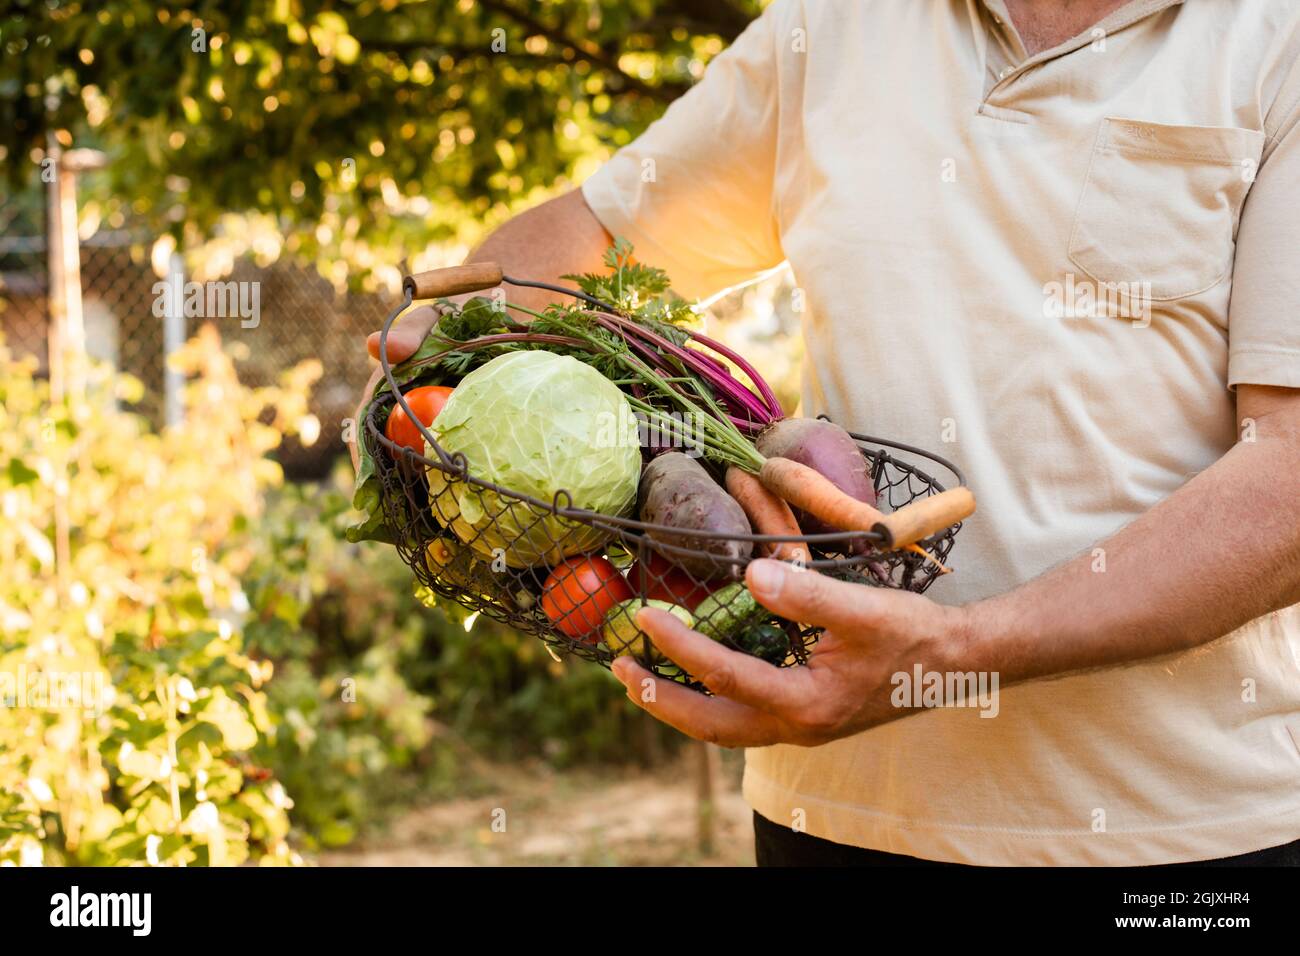 Ein älterer Mann hält in den Händen einen Korb mit frischem Gemüse. Er steht auf dem Hintergrund des Gartens Stockfoto